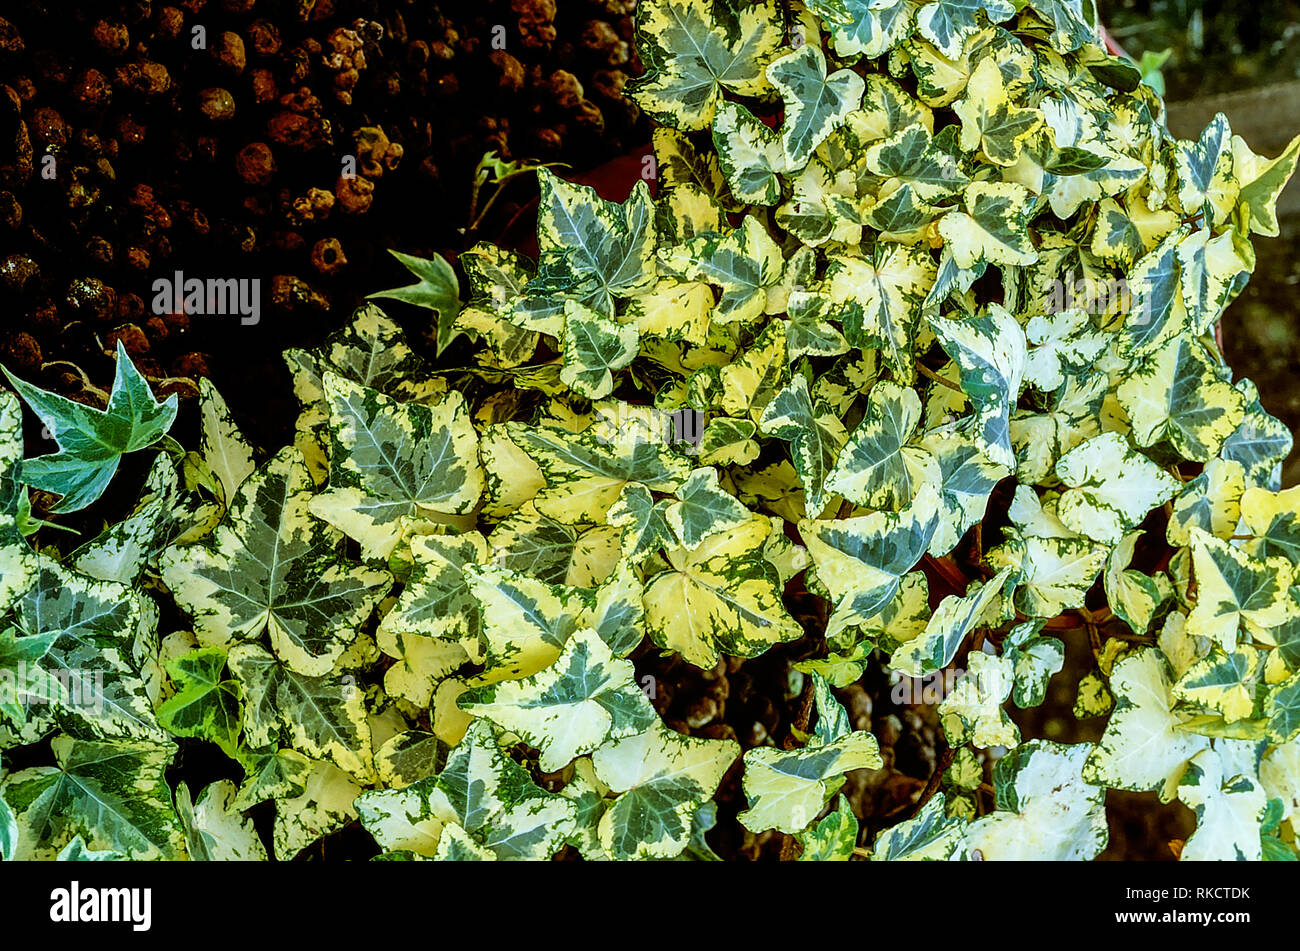 Hedera colchica Goldenen Barren Gemeinsame oder Efeu mit grünlich-graue  Blätter mit breiten gelben Margen niedrig wachsenden ideal für kleine Wand-  oder zimmerpflanze Stockfotografie - Alamy